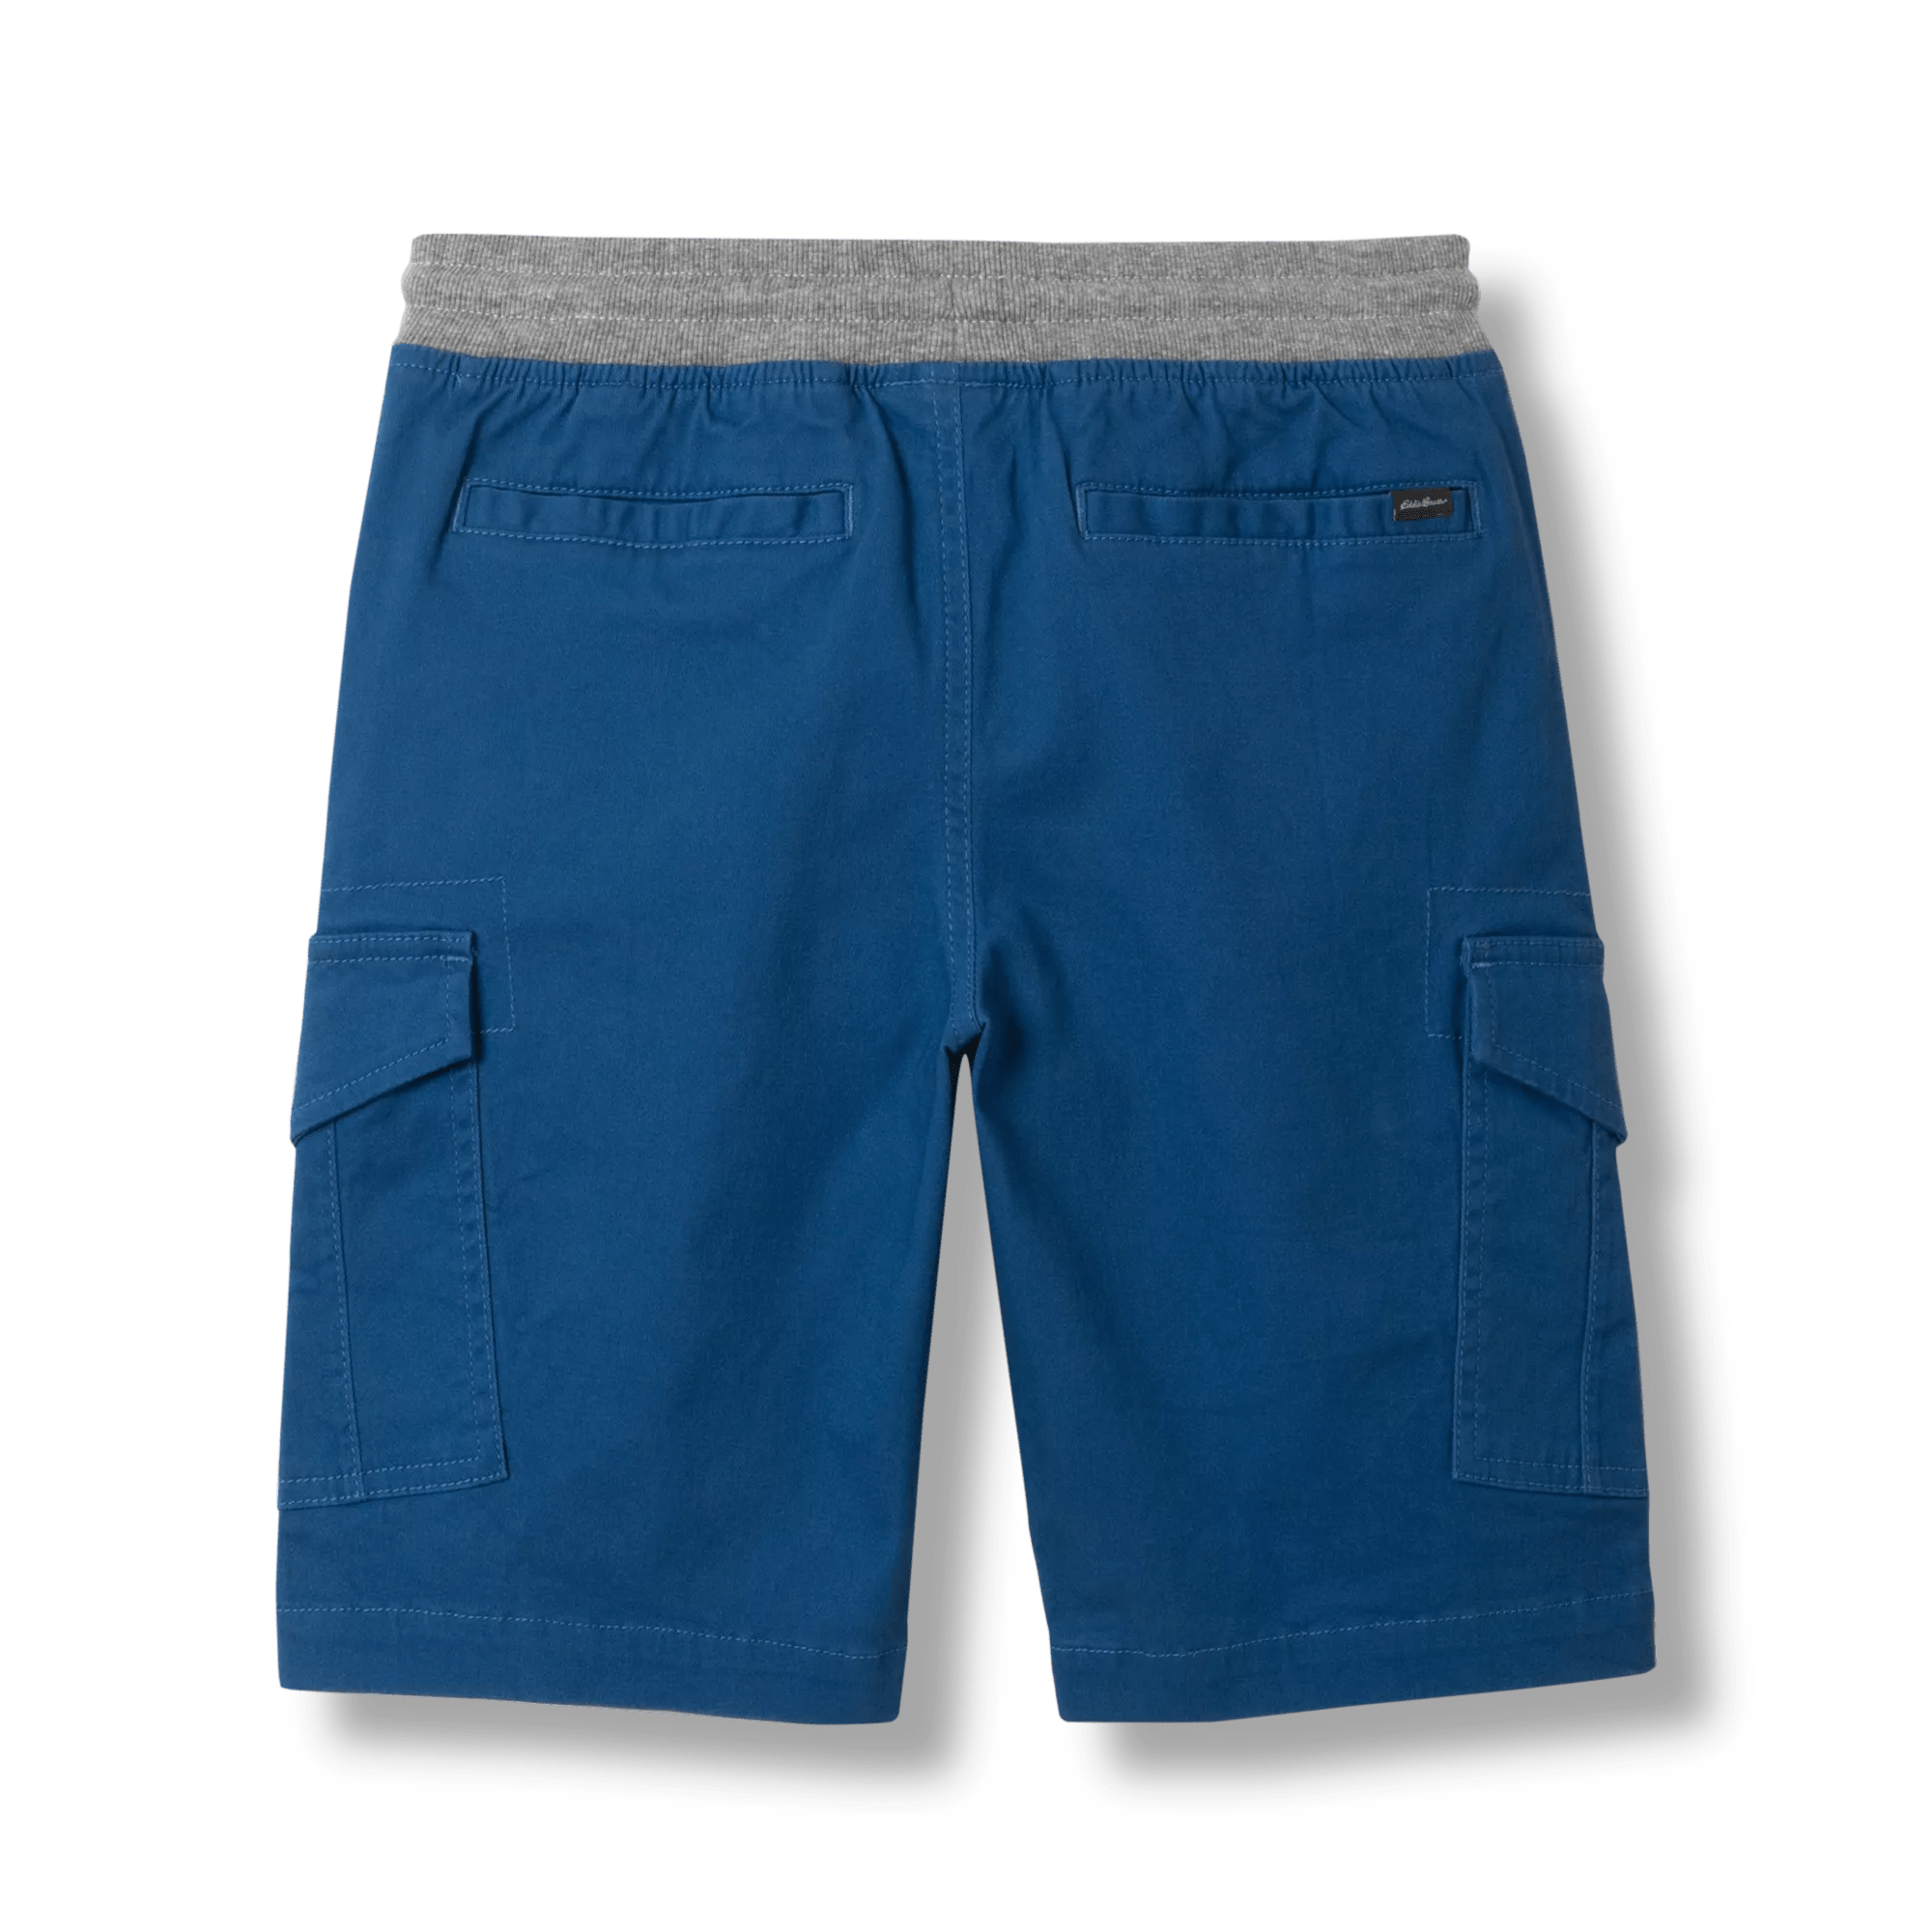 Adventurer® Cargo Shorts